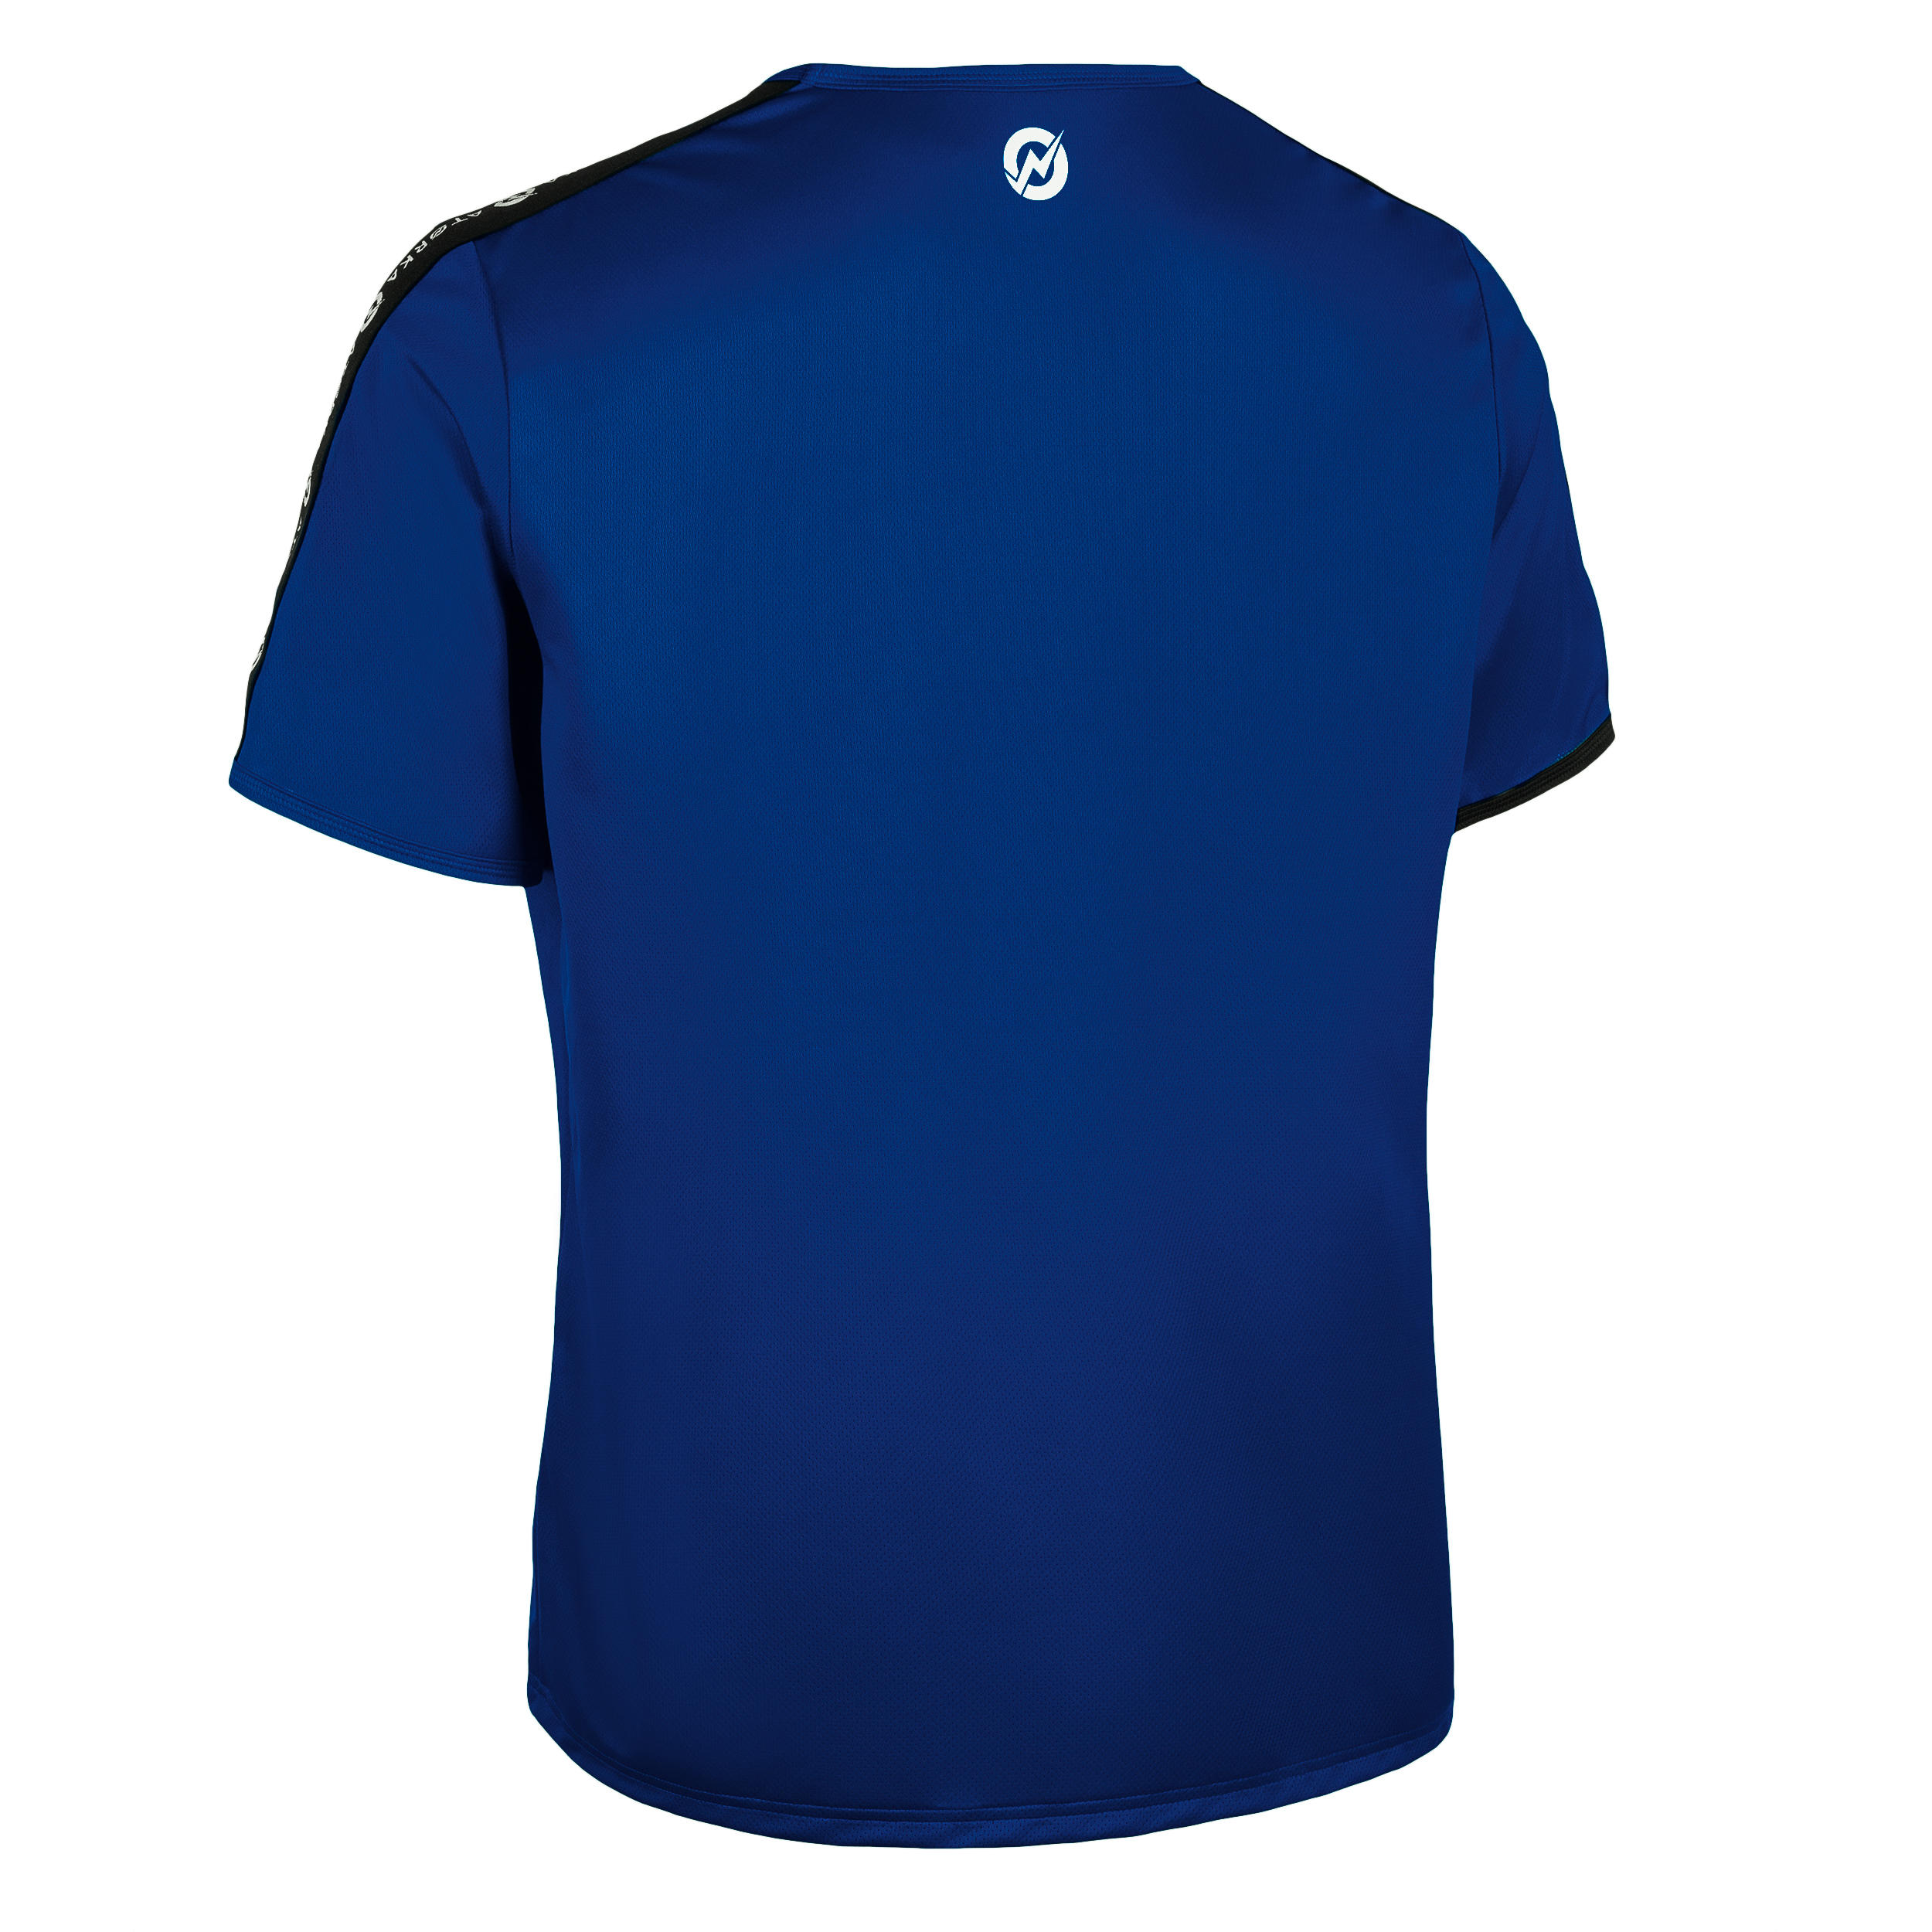 H100C Short-Sleeved Handball Top - Dark Blue 2/3